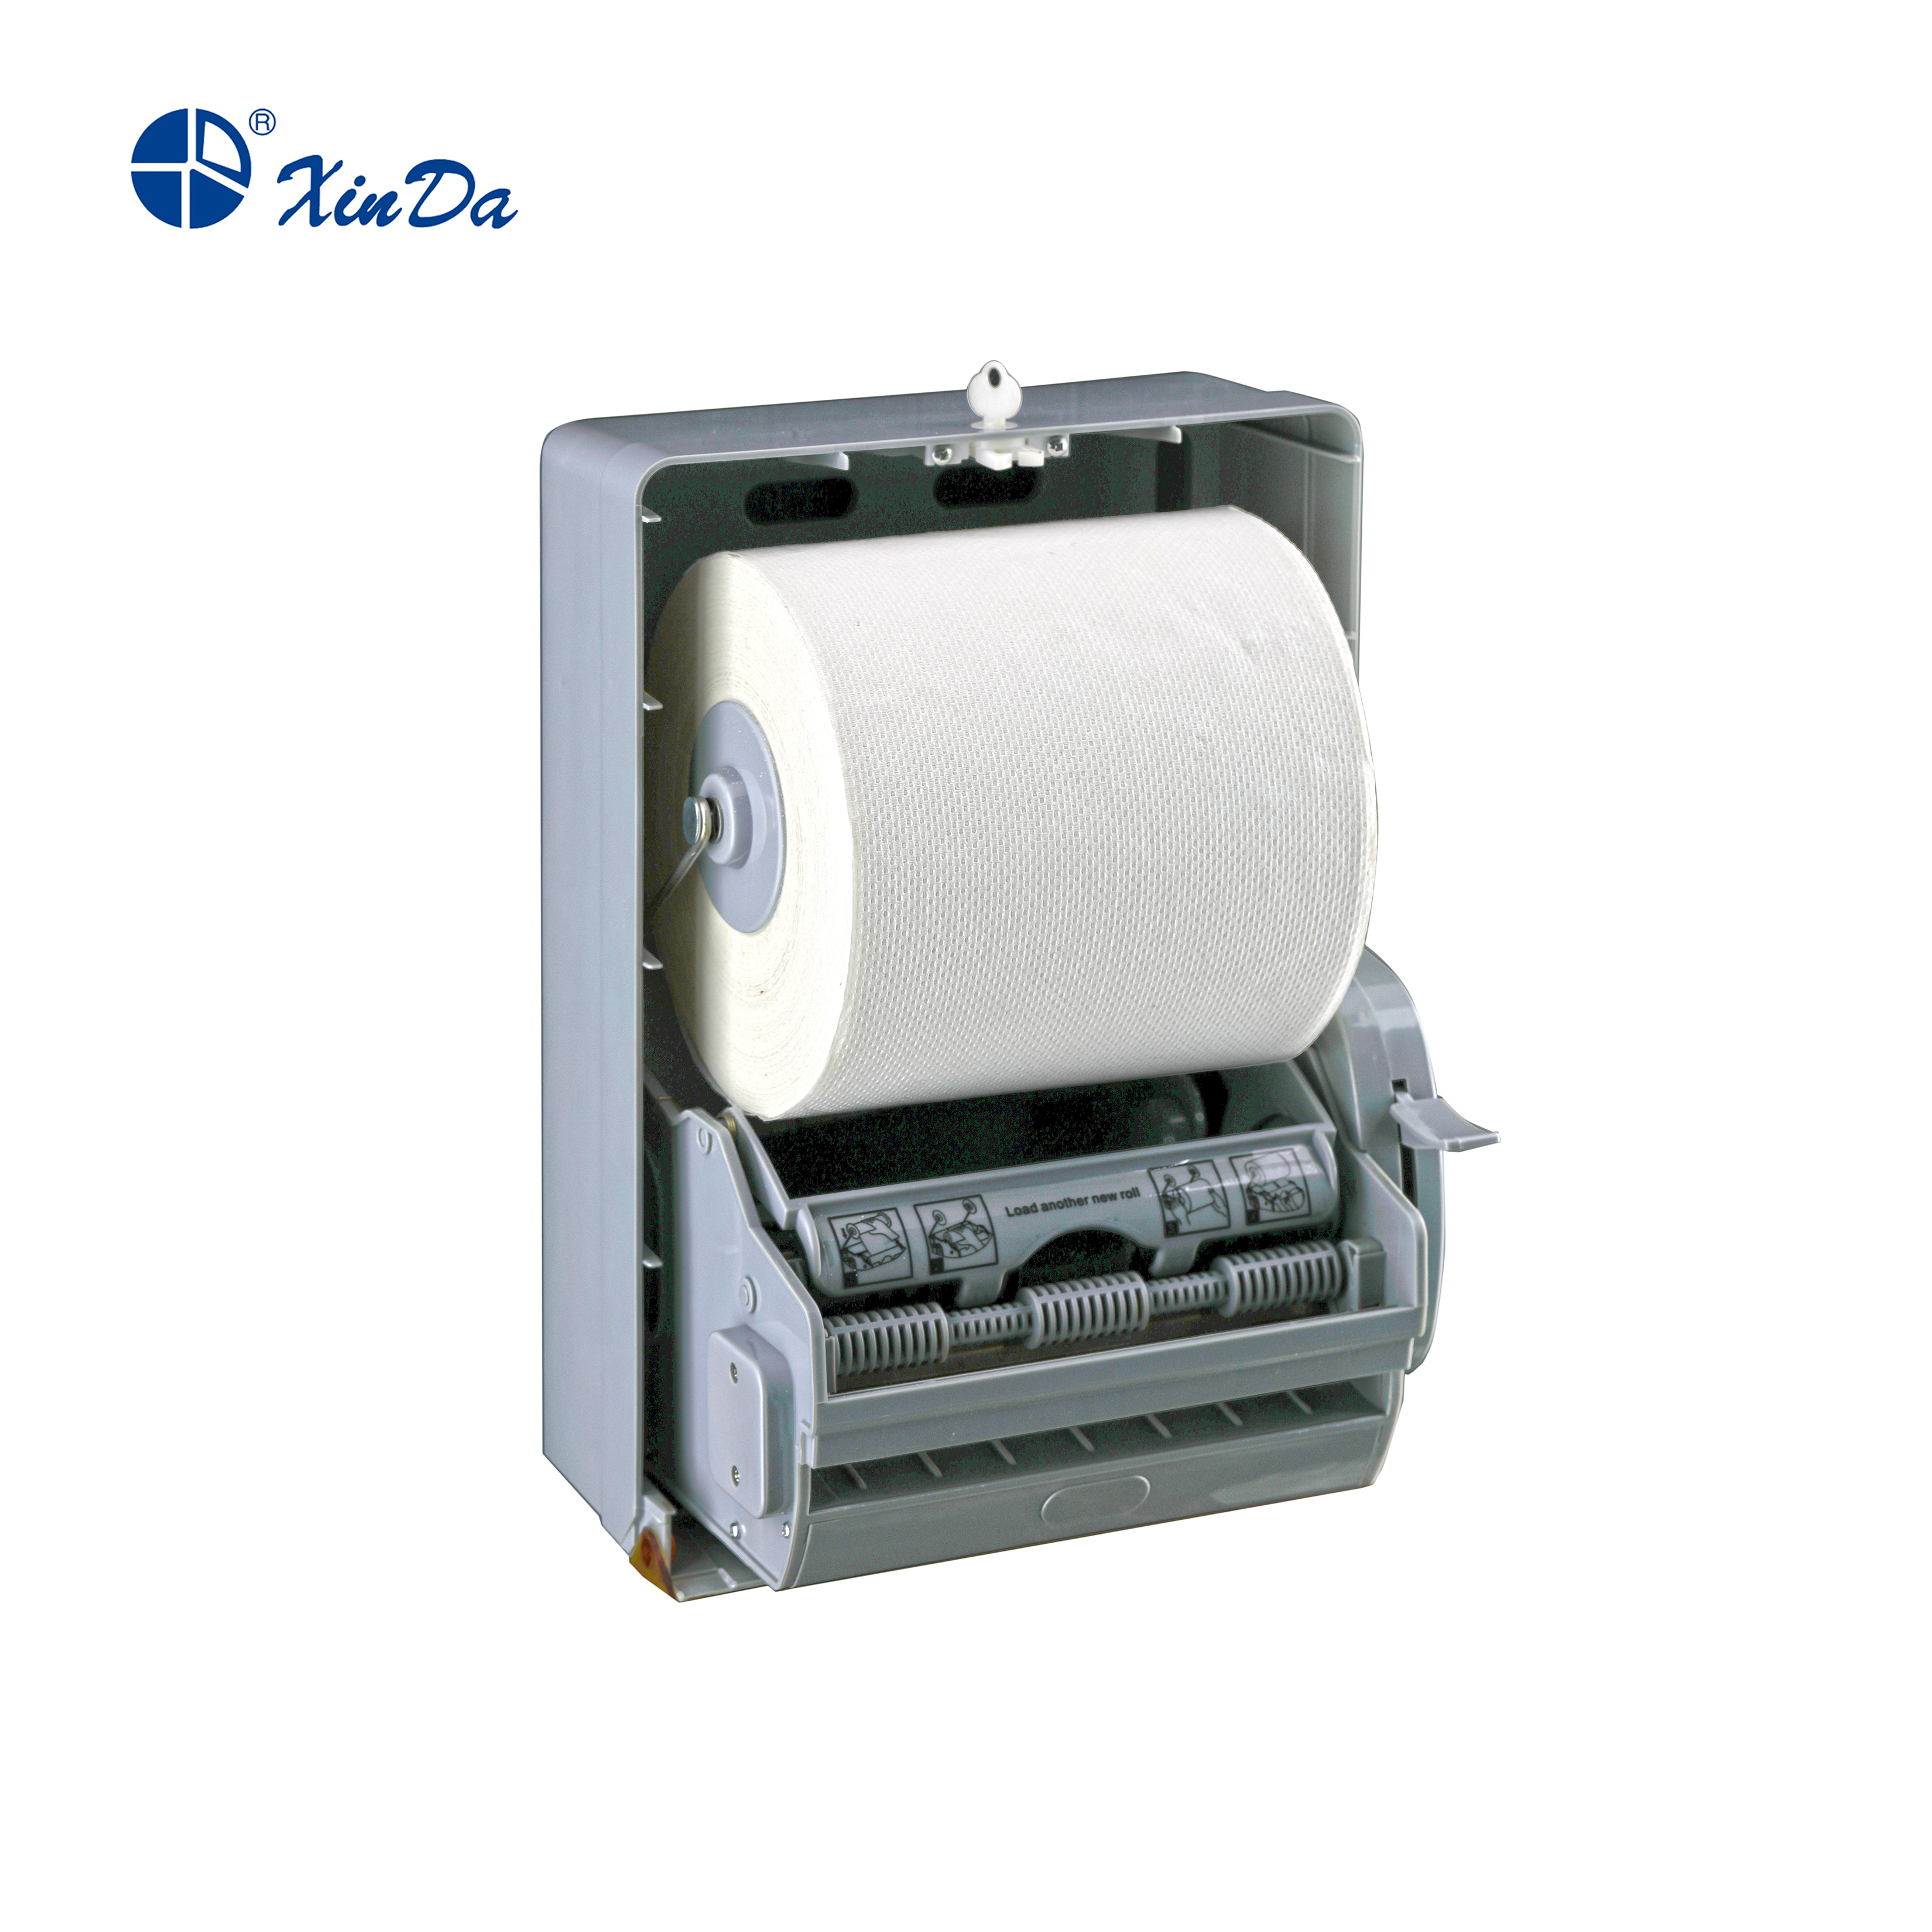 Die Entwicklung der Leichtigkeit: Der Toilettenpapierrollenhalter